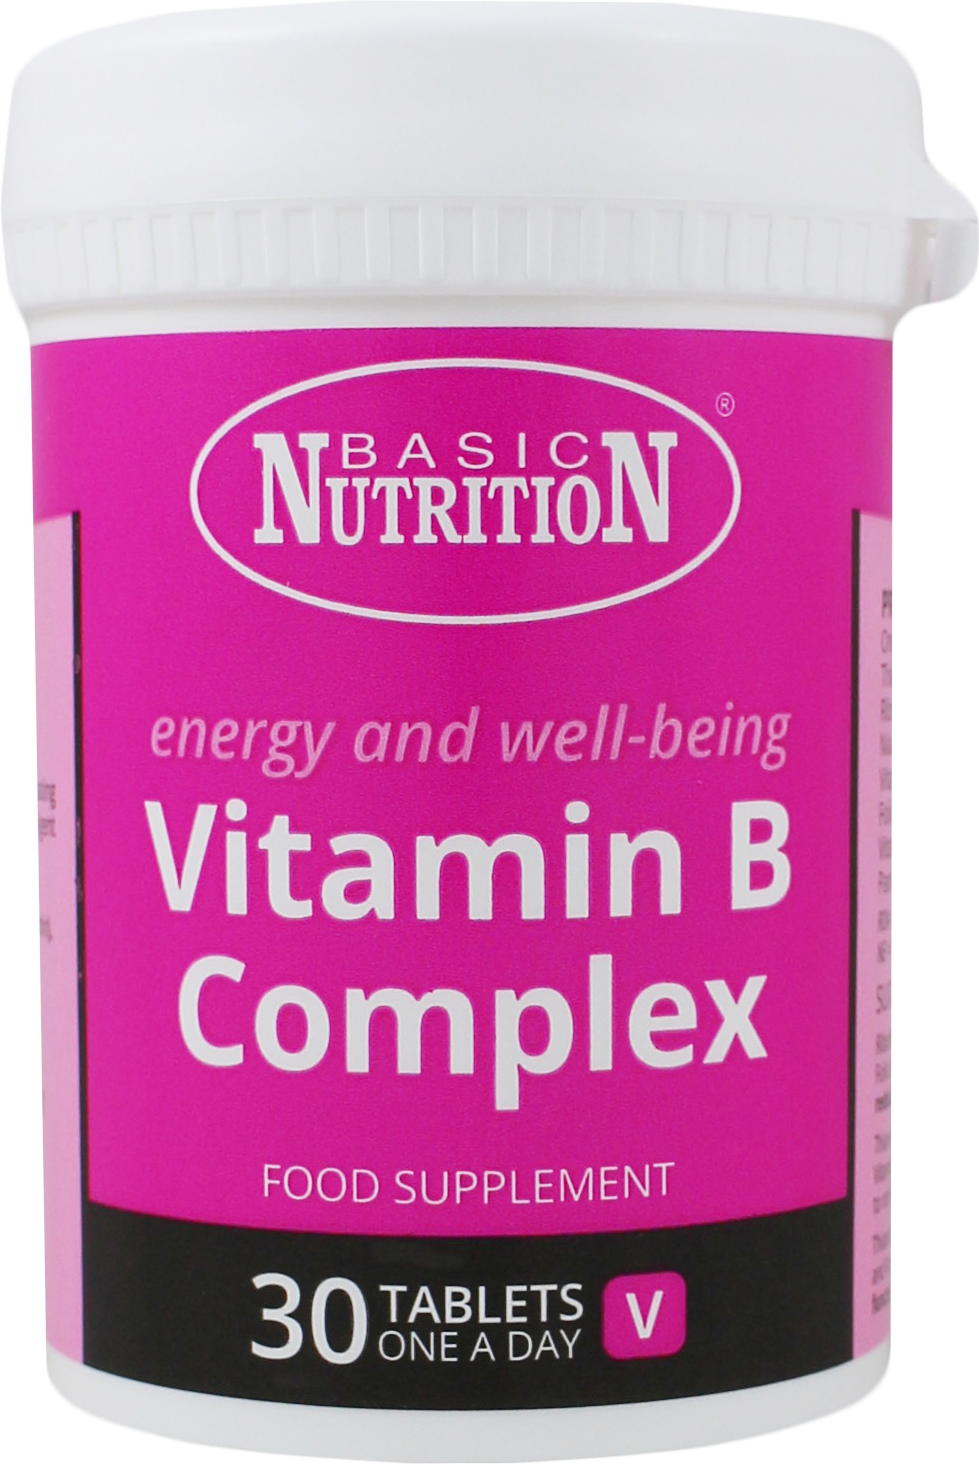 BASIC NUTRITION VITAMIN B COMPLEX - E-Pharmacy Ghana